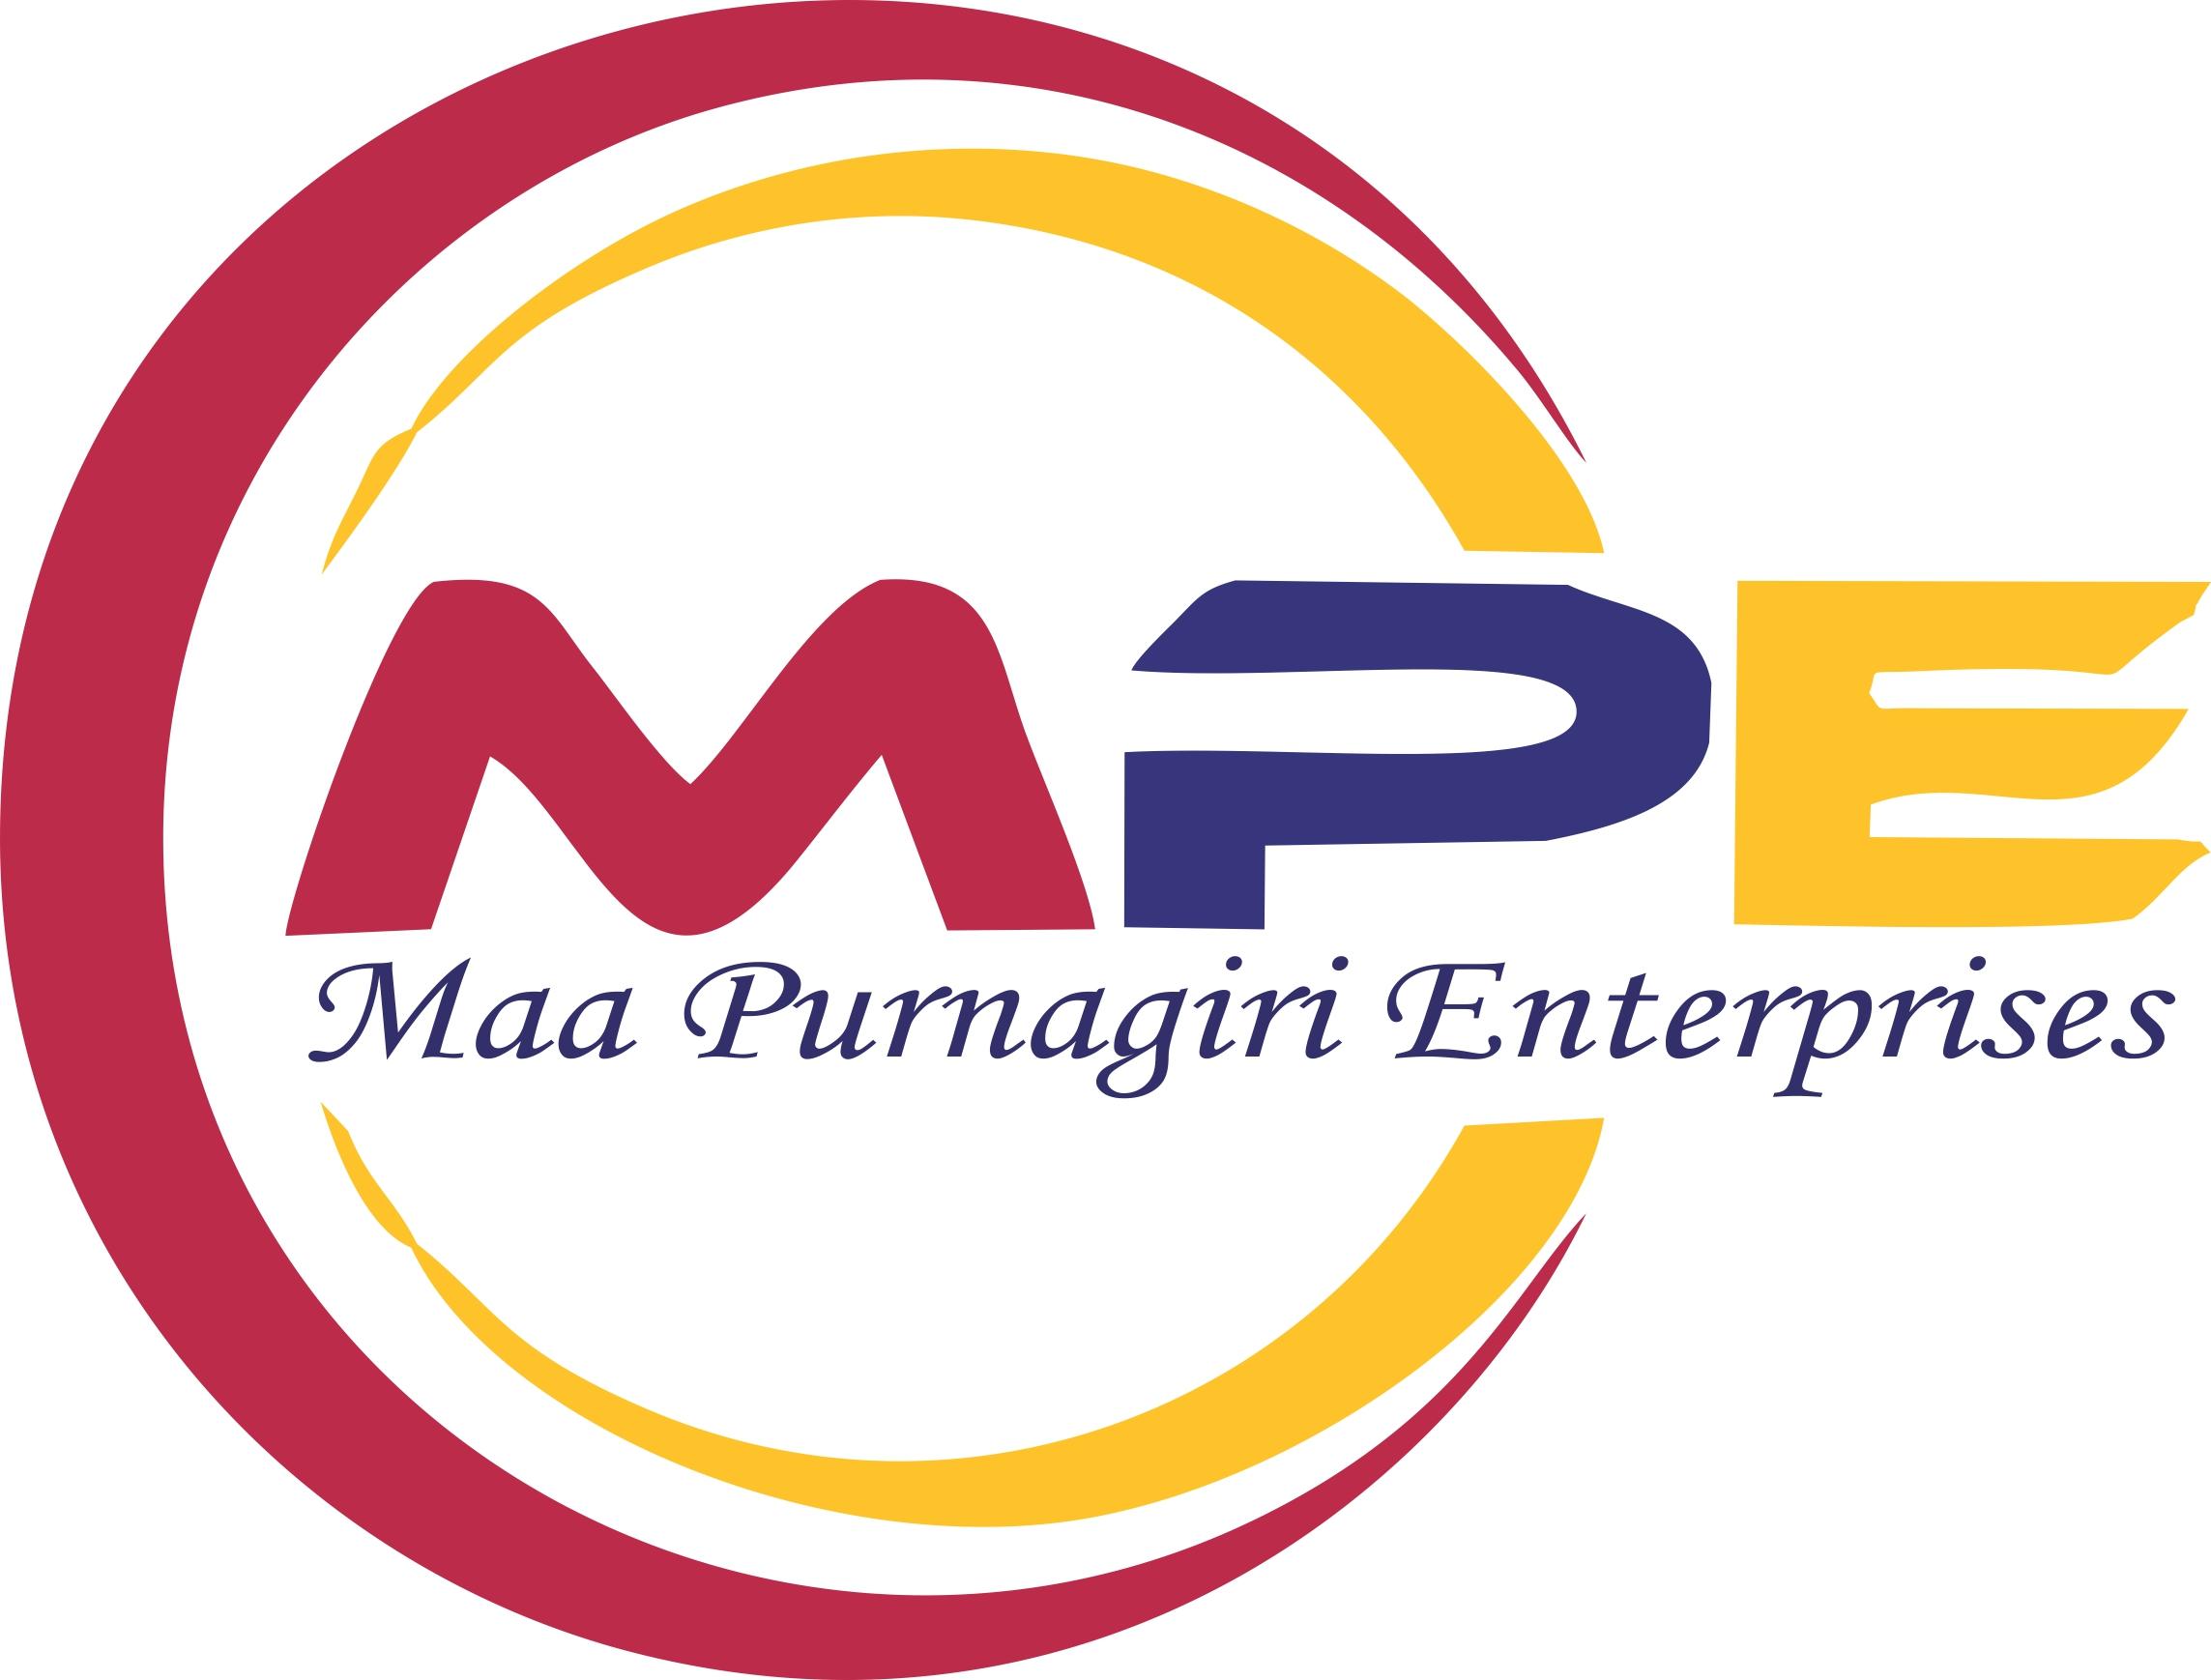 Maa Purnagiri Enterprises